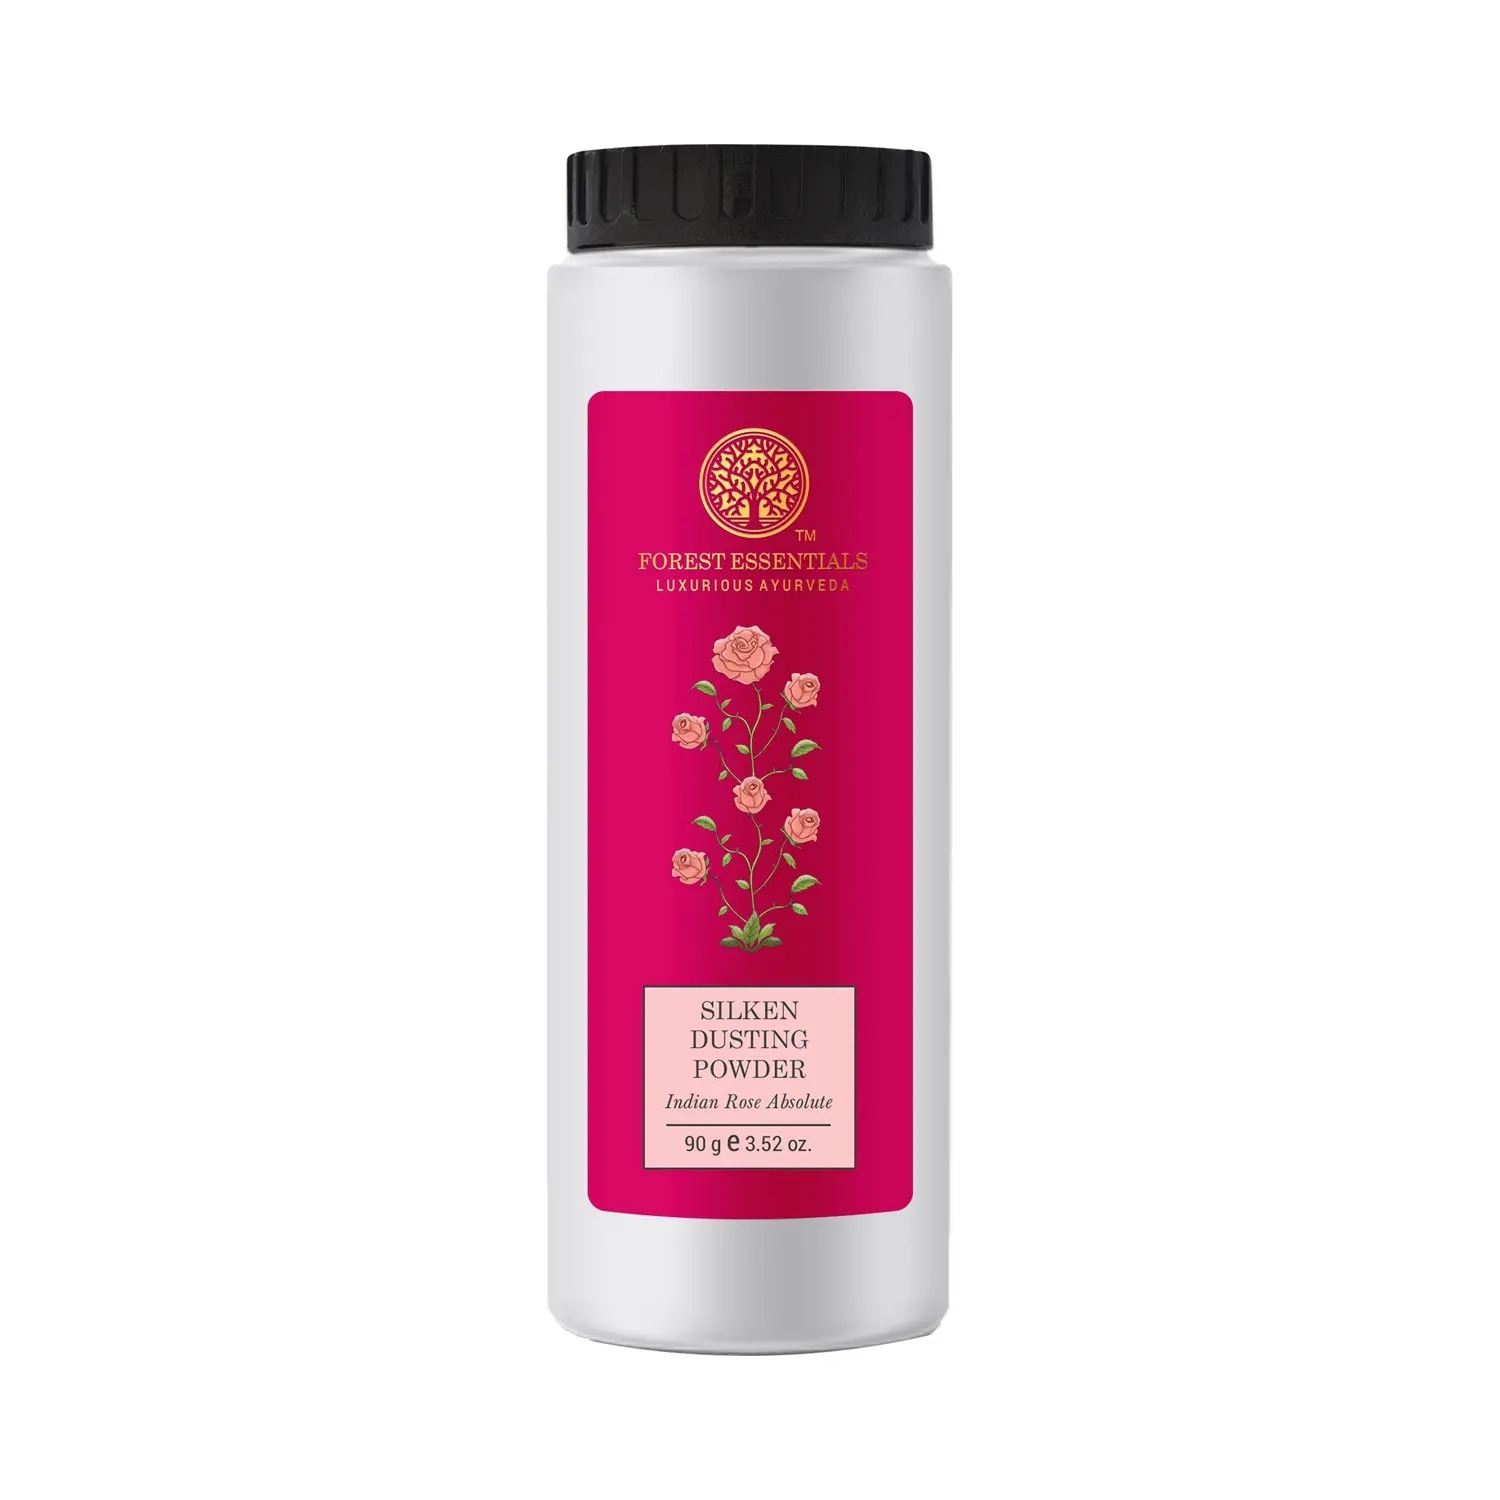 Forest Essentials | Forest Essentials Indian Rose Absolute Silken Dusting Powder (90g)